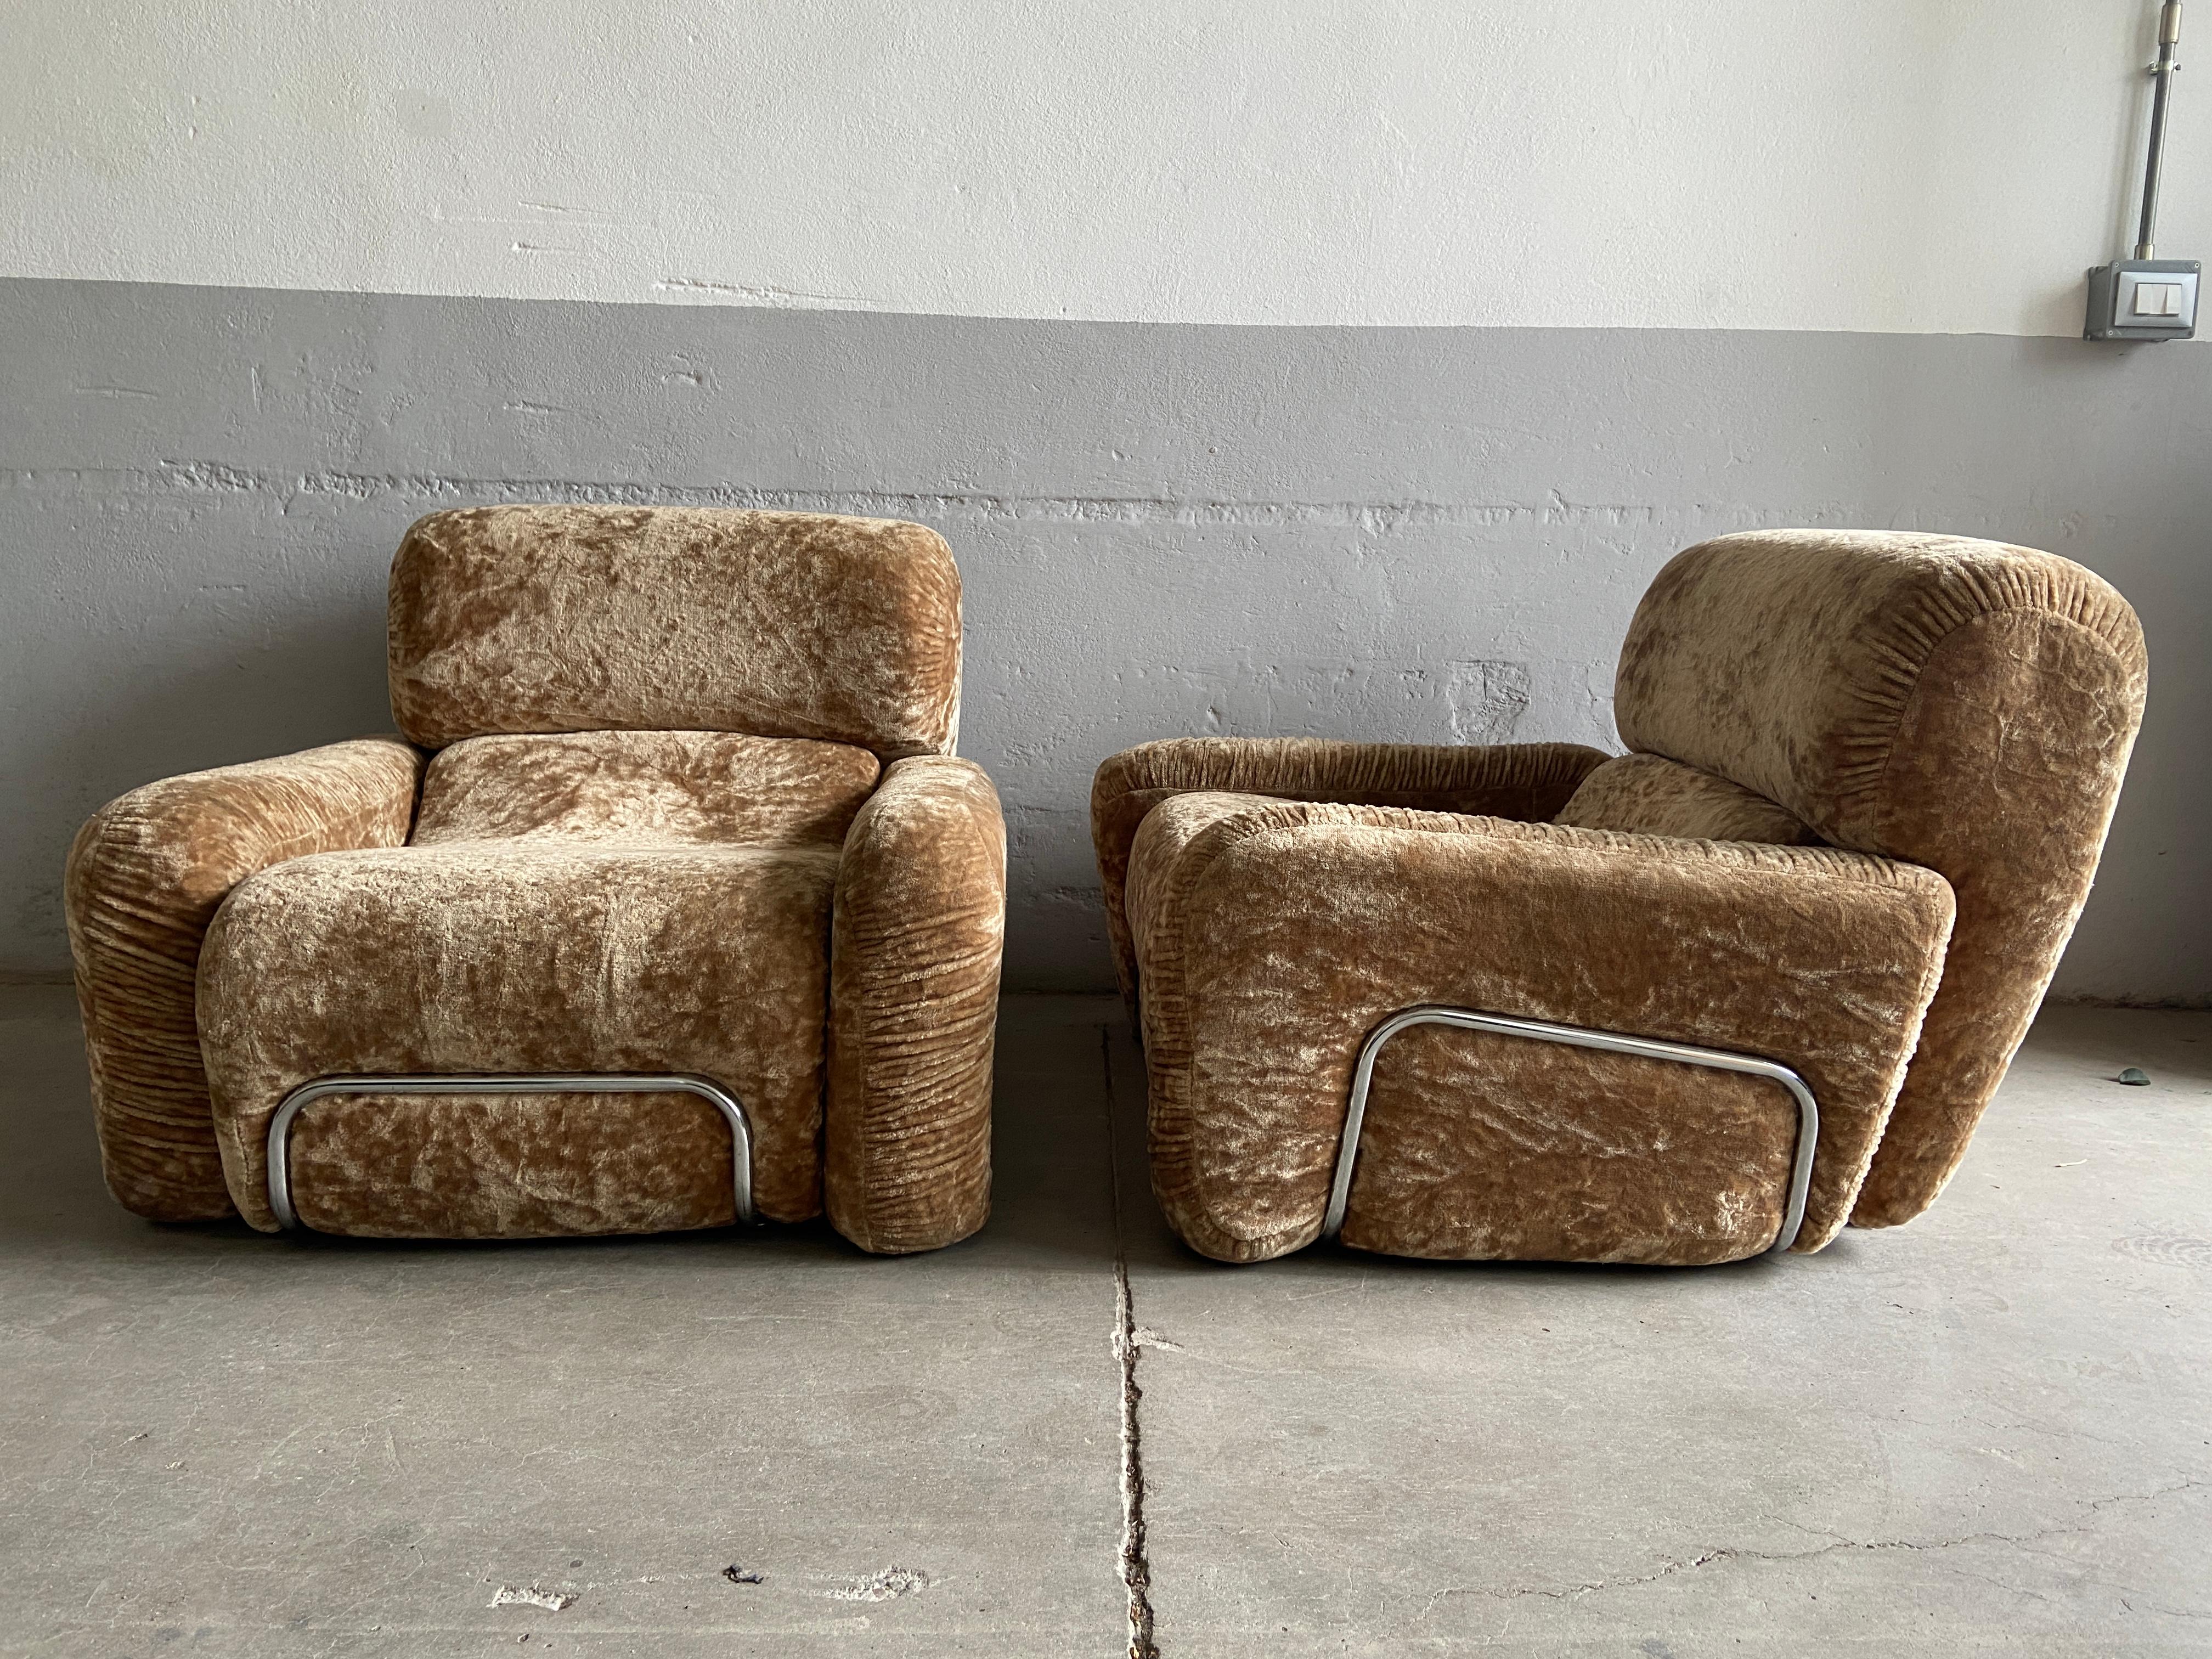 Mid-Century Modern Italienisch Paar Chrom und Chenille Sessel mit original beige Farbe Polsterung.
Das Set ist in perfektem Vintage-Zustand
Falls eine andere Polsterung gewünscht wird, können wir auf Anfrage ein Angebot erstellen.